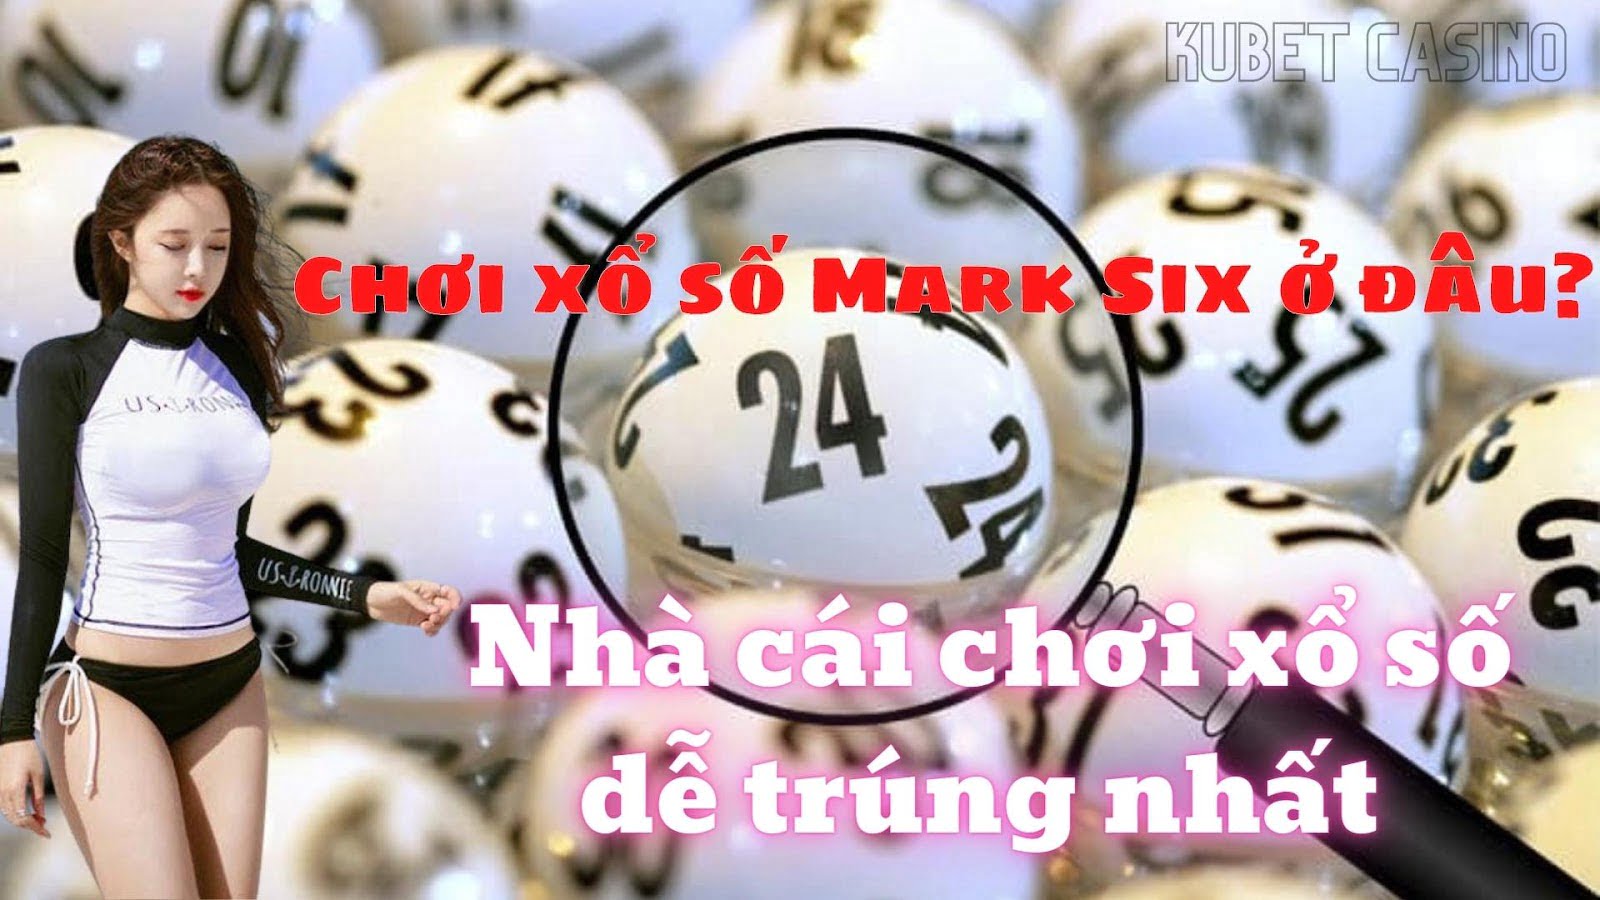 Web chơi xổ số Mark Six trực tuyến mới nhất ở đâu? Giới thiệu xổ số Mark Six tại Kubet Casino